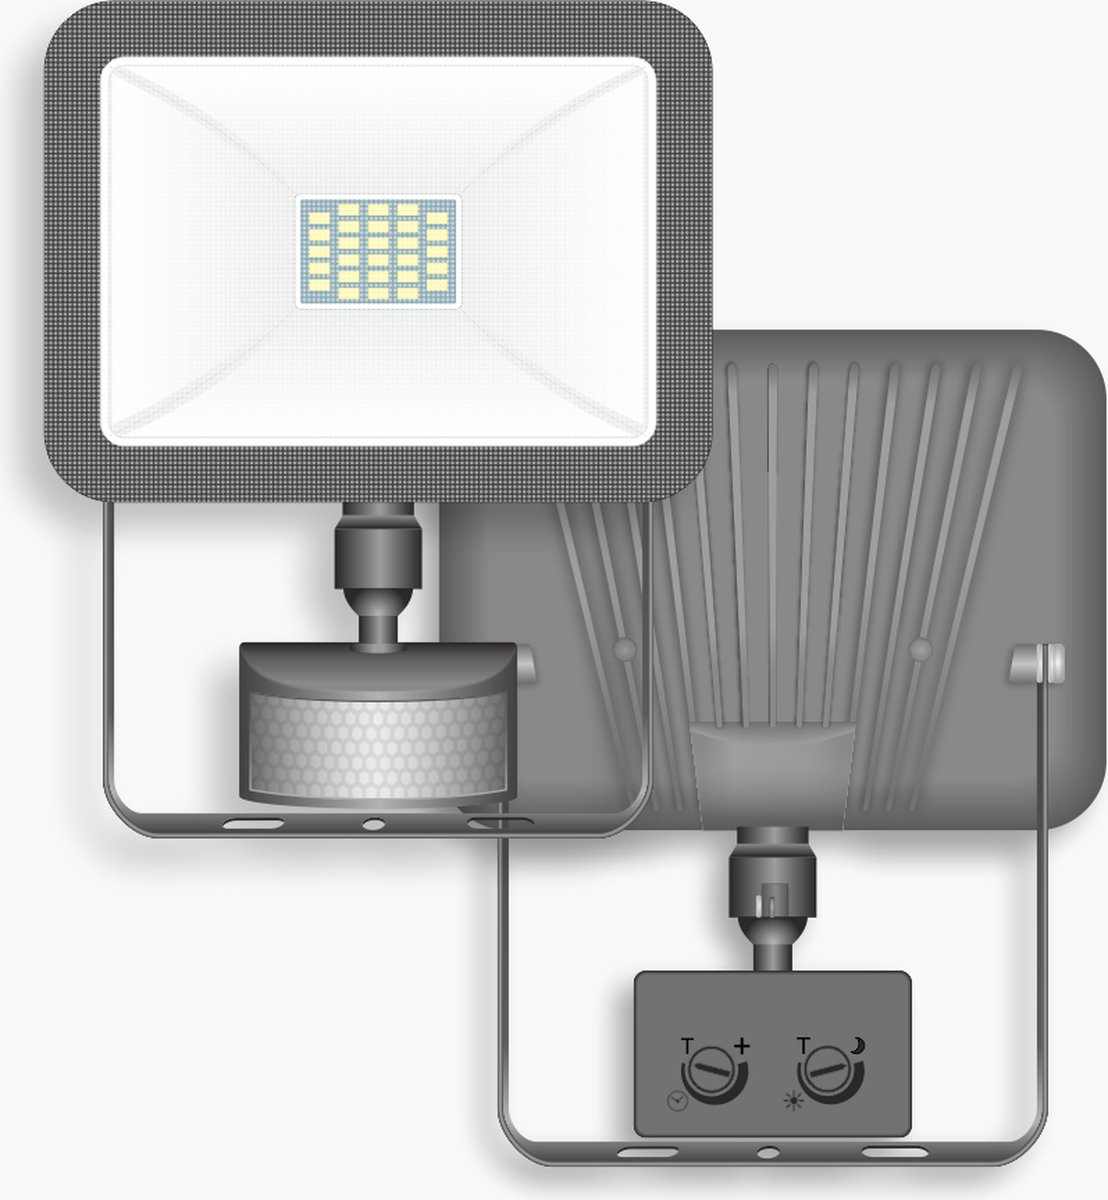 Lampe d'extérieur LED ELRO LF60 Design avec Détecteur de Mouvement - 20W -  1600LM - Étanche IP54 - Blanc (LF60-20-P-W) ELRO